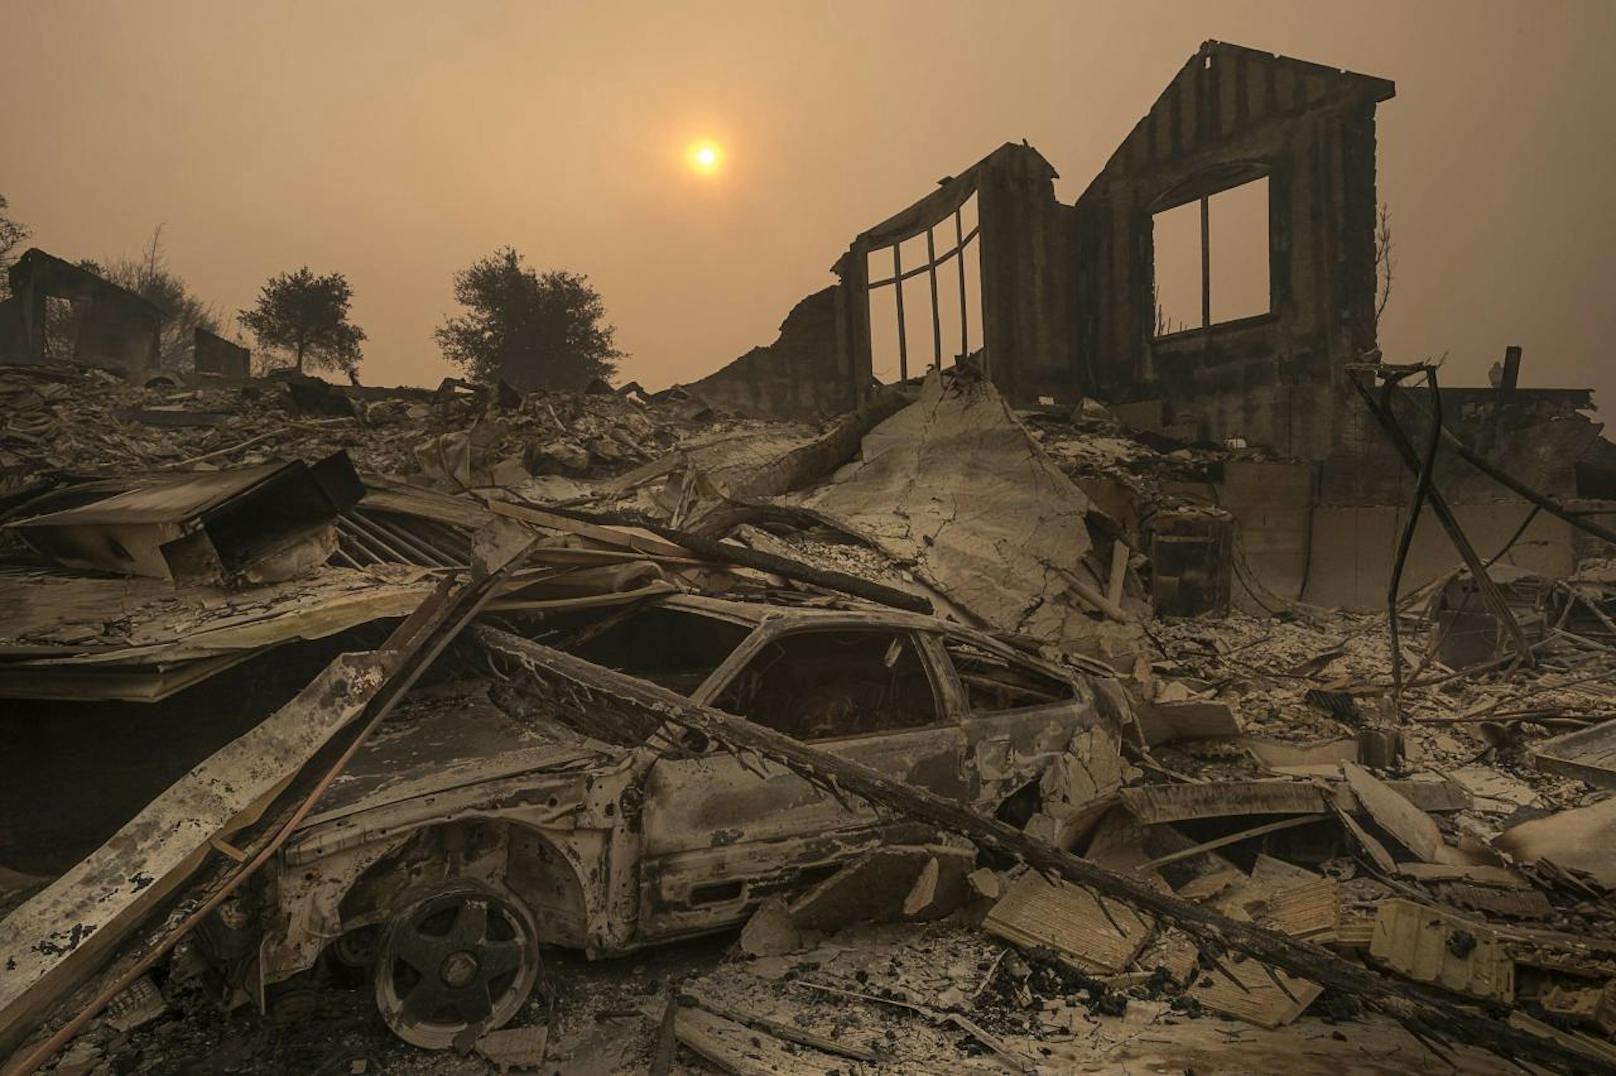 <b>10. Oktober 2017:</b> Schwere <b>Waldbrände in Kalifornien</b> forderten Dutzende Menschenleben. Eine Fläche in der Größe von New York City fiel den Flammen zum Opfer. Es sollte nicht der letzte verheerende Brand in diesem Jahr sein. 

<b>Mehr Infos und Bilder:</b> <a href="https://www.heute.at/welt/news/story/Waldbraende-in-Kalifornien--Schon-ueber-30-Tote-42202283" target="_blank">Waldbrände in Kalifornien: Schon über 30 Tote</a>